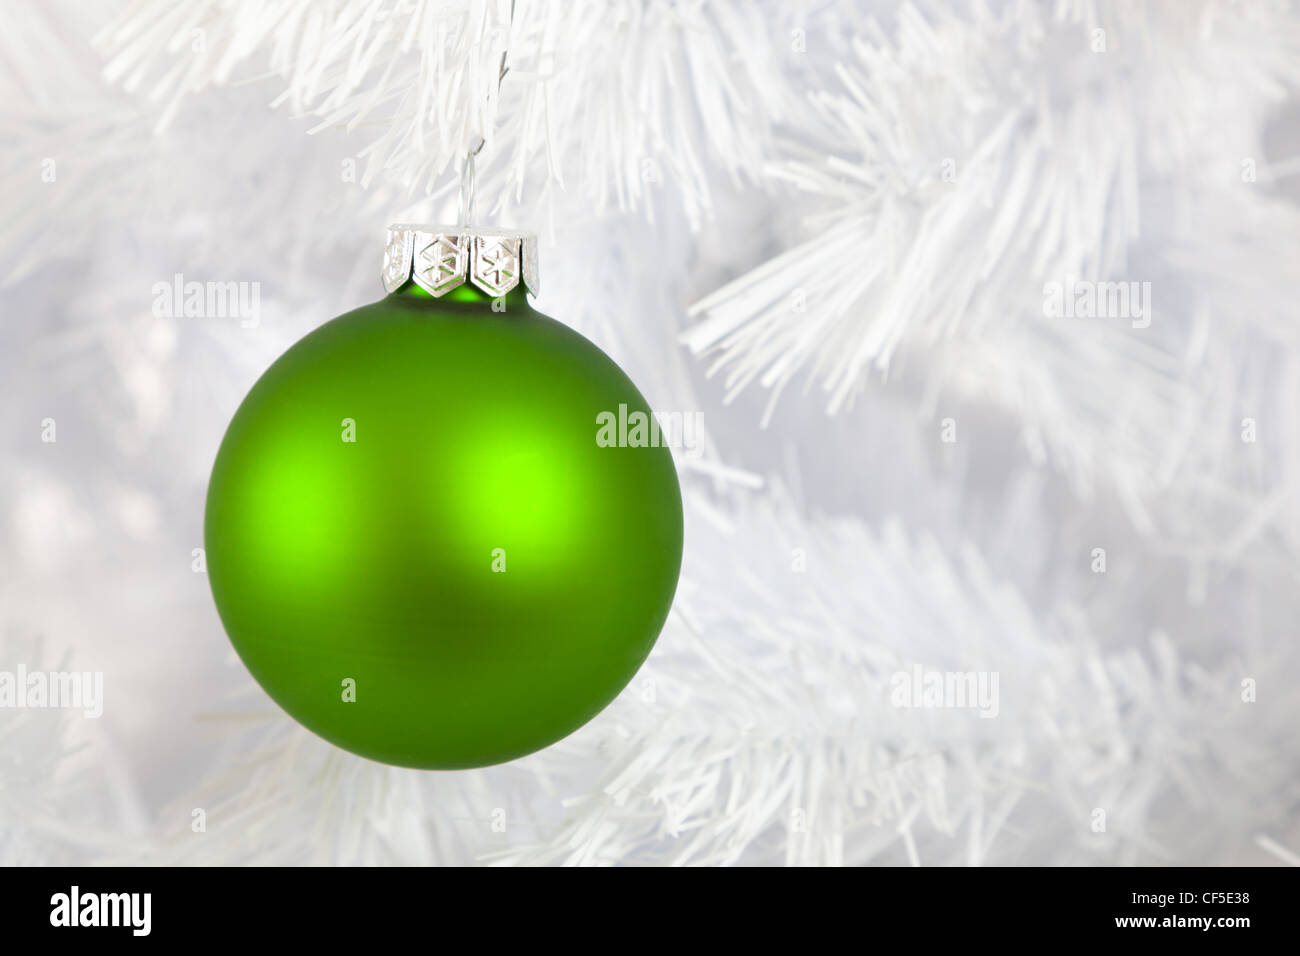 Grün-Weihnachtskugel, Ball oder Ornament auf einem weißen Weihnachtsbaum Stockfoto